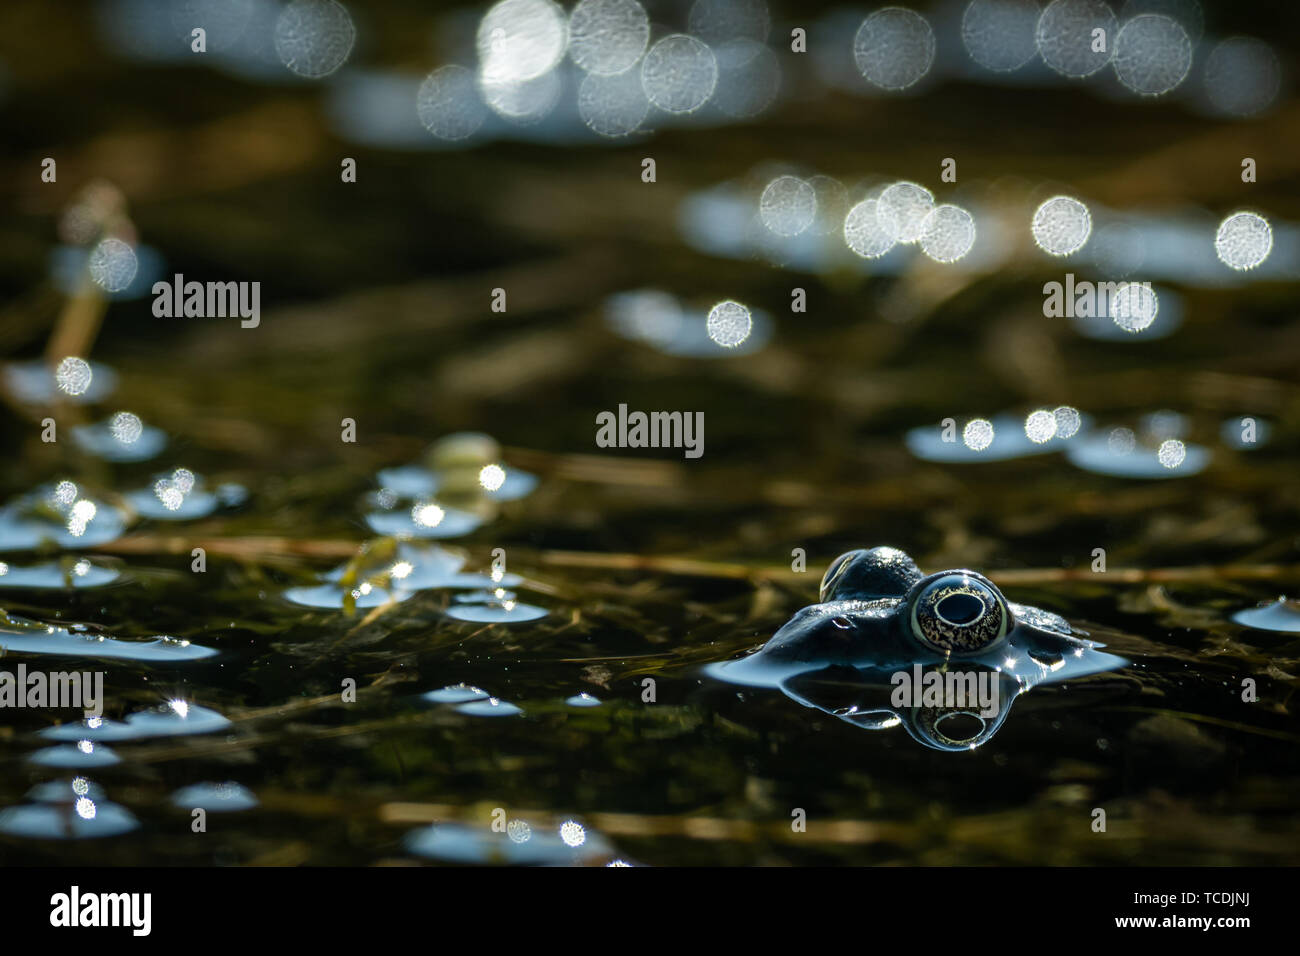 A water frog (rana ridibunda) resting near a small pond on a sunny day, Croatia Stock Photo